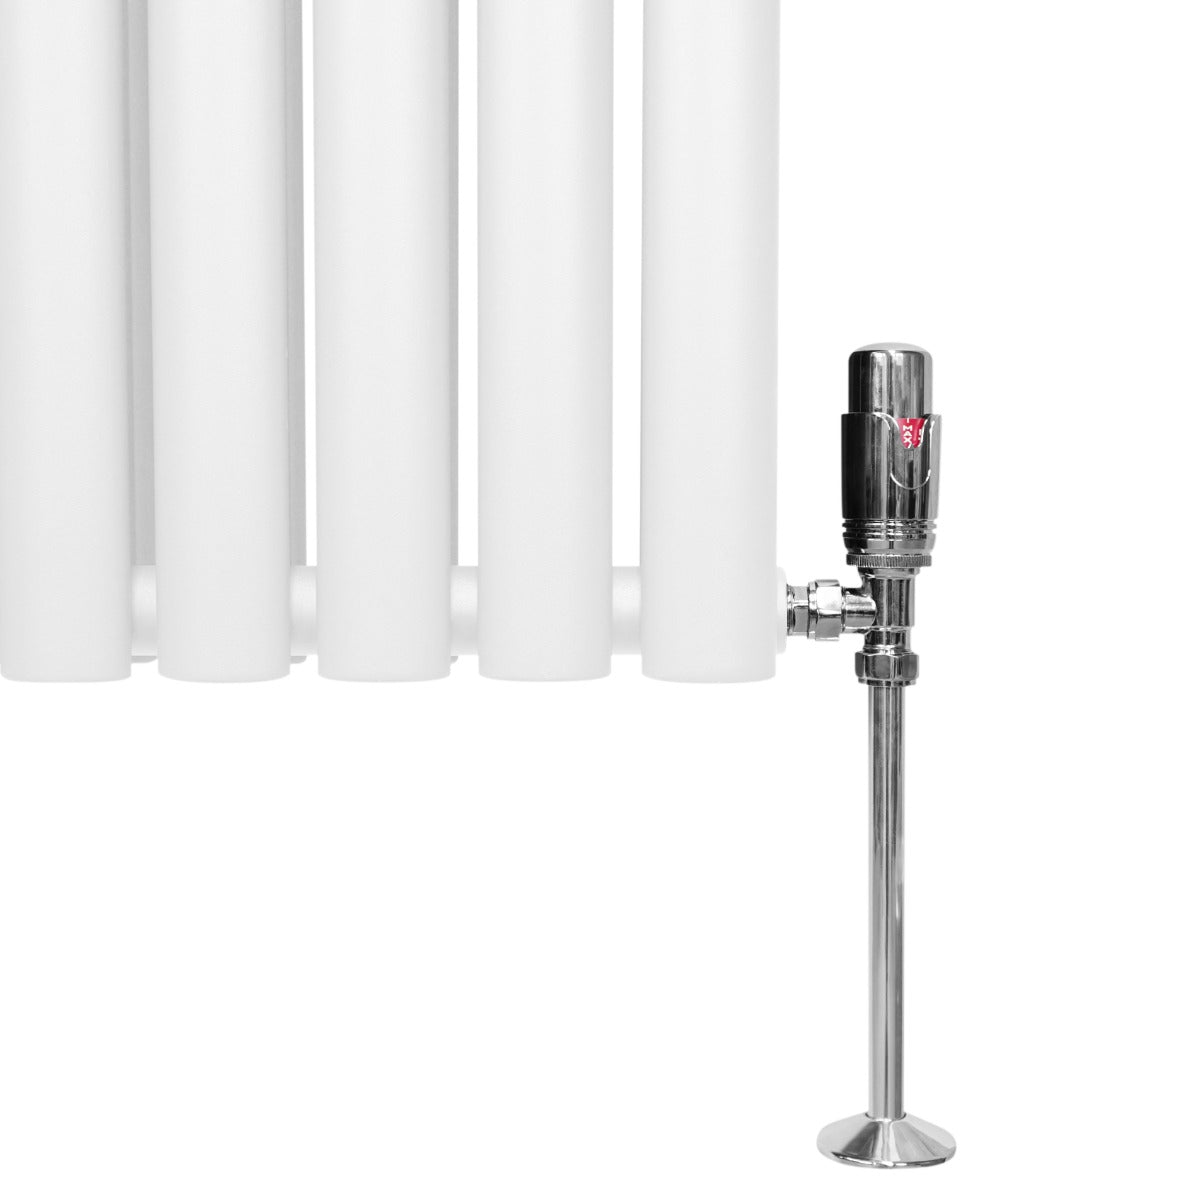 Oval Column Radiator & Valves - 1800mm x 360mm – White